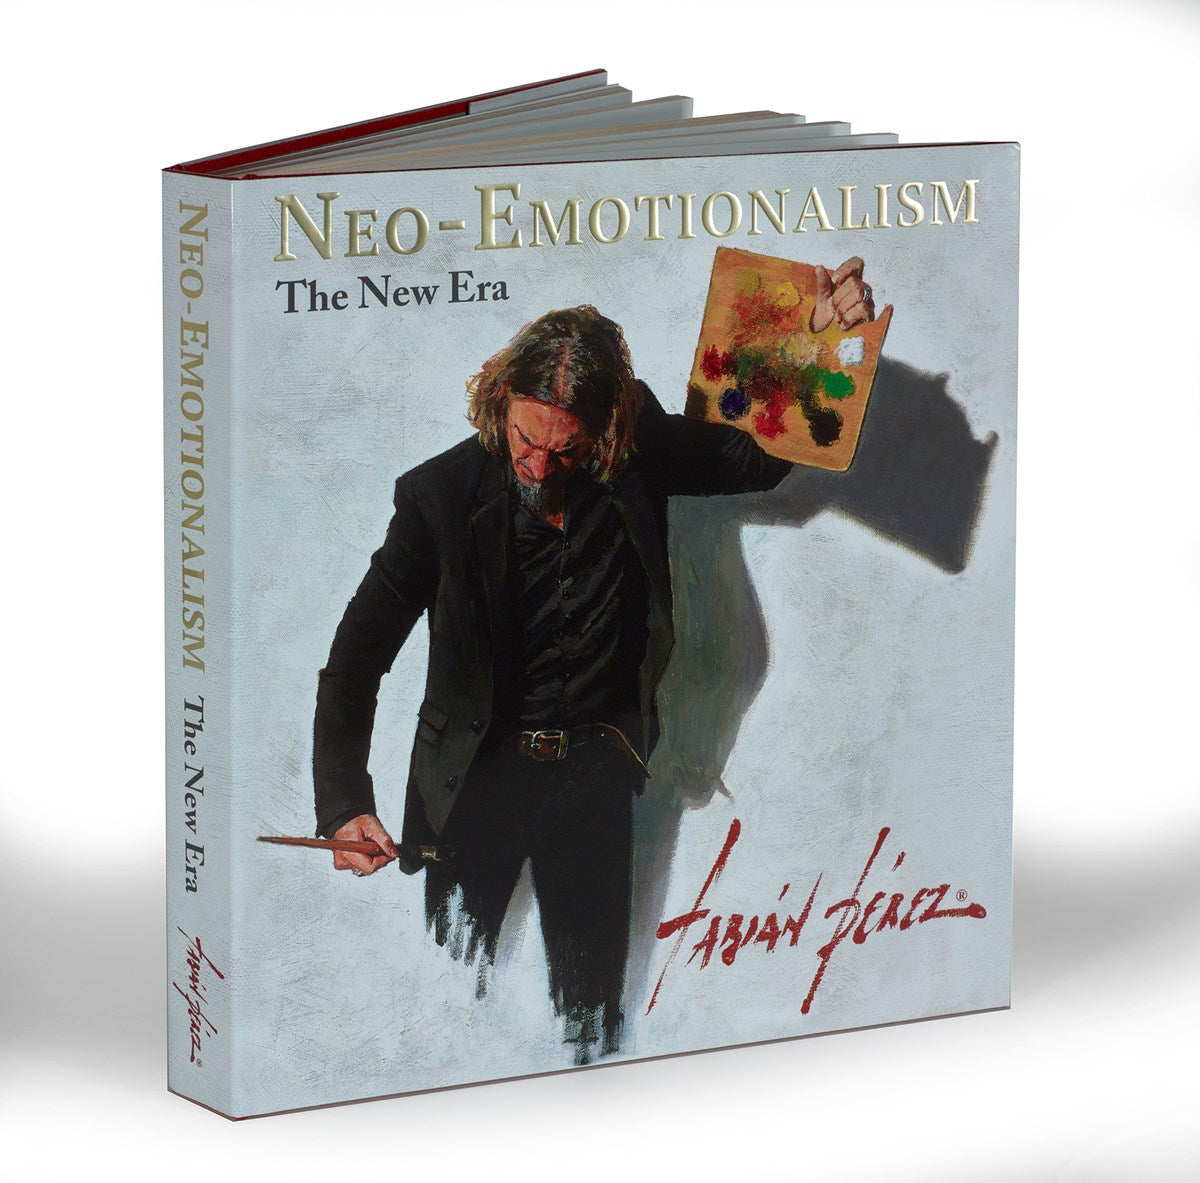 Neo-Emotionalism The New Era by Fabian Perez